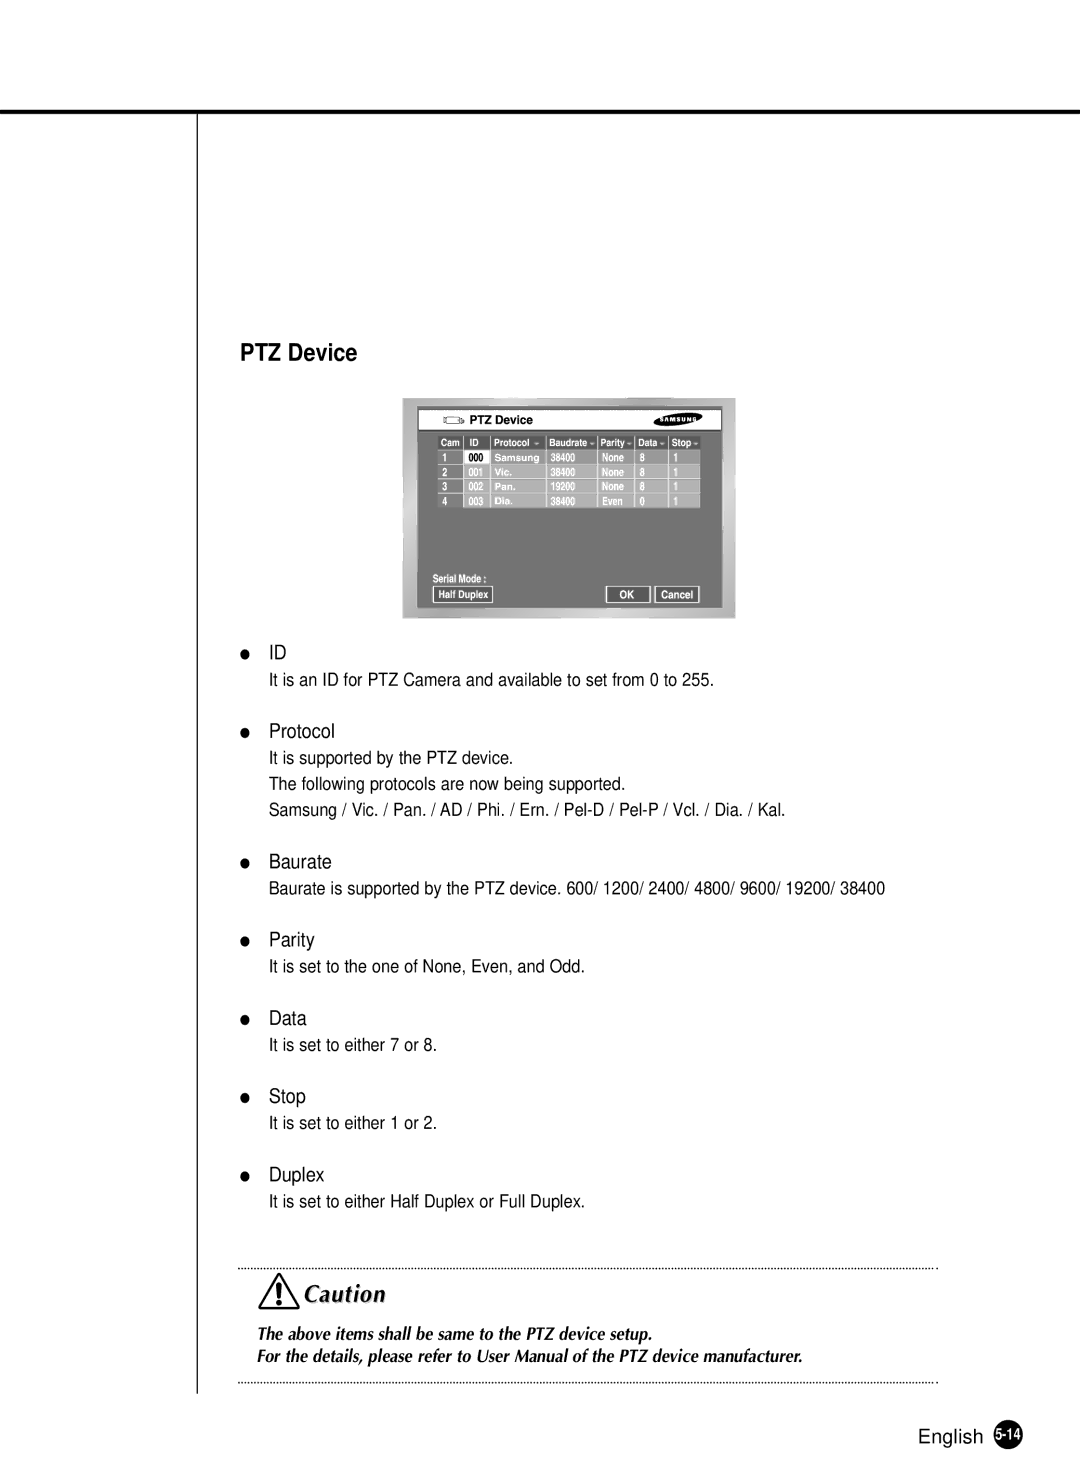 Samsung SHR-2040N, SHR-2040P manual PTZ Device, Protocol, Baurate 